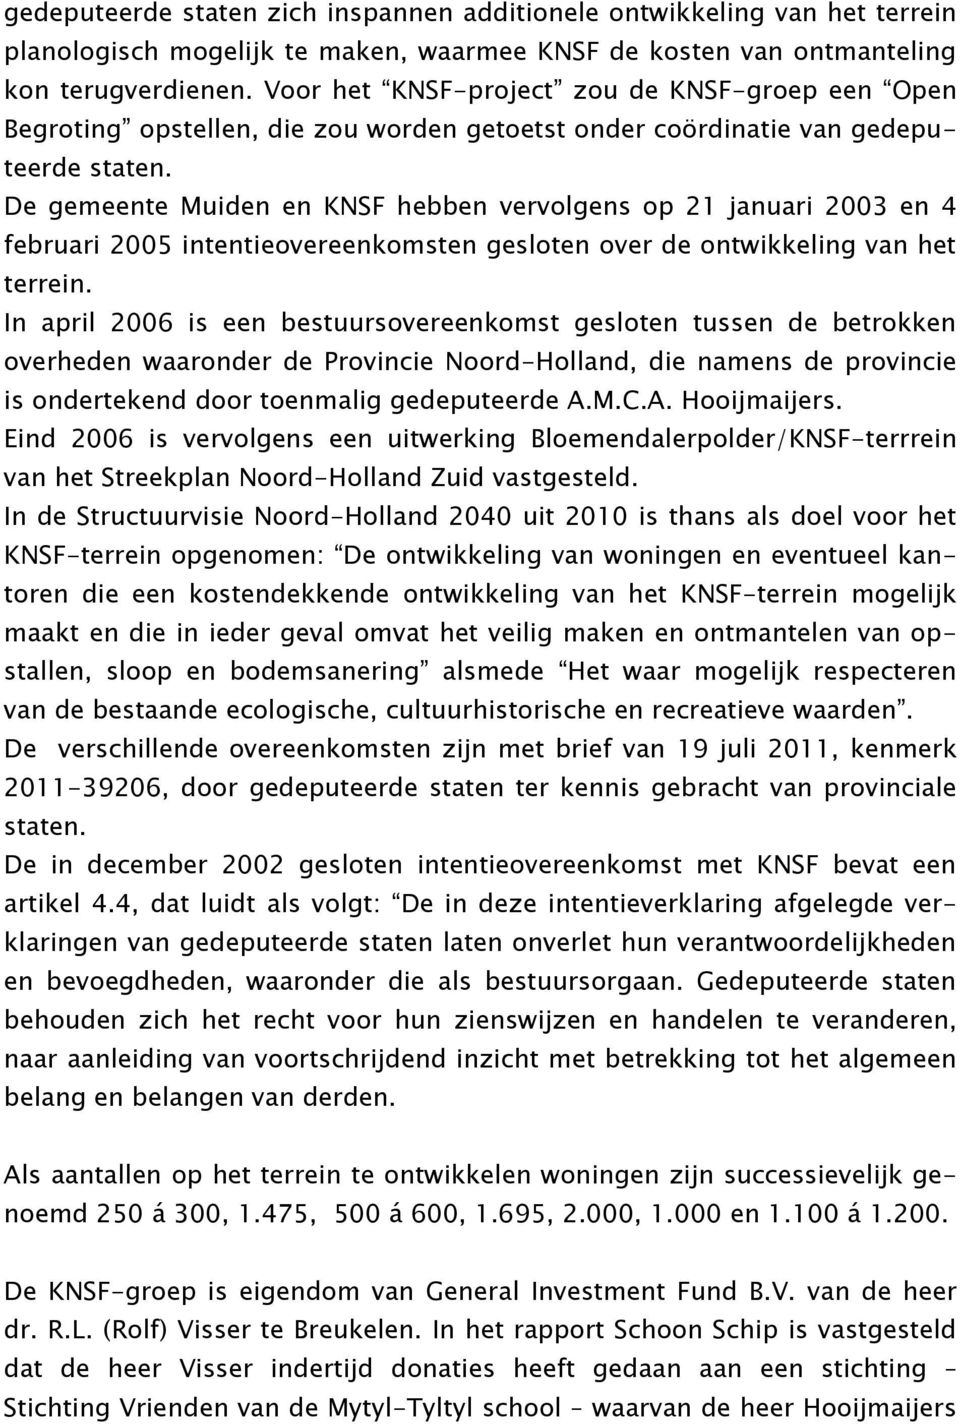 De gemeente Muiden en KNSF hebben vervolgens op 21 januari 2003 en 4 februari 2005 intentieovereenkomsten gesloten over de ontwikkeling van het terrein.